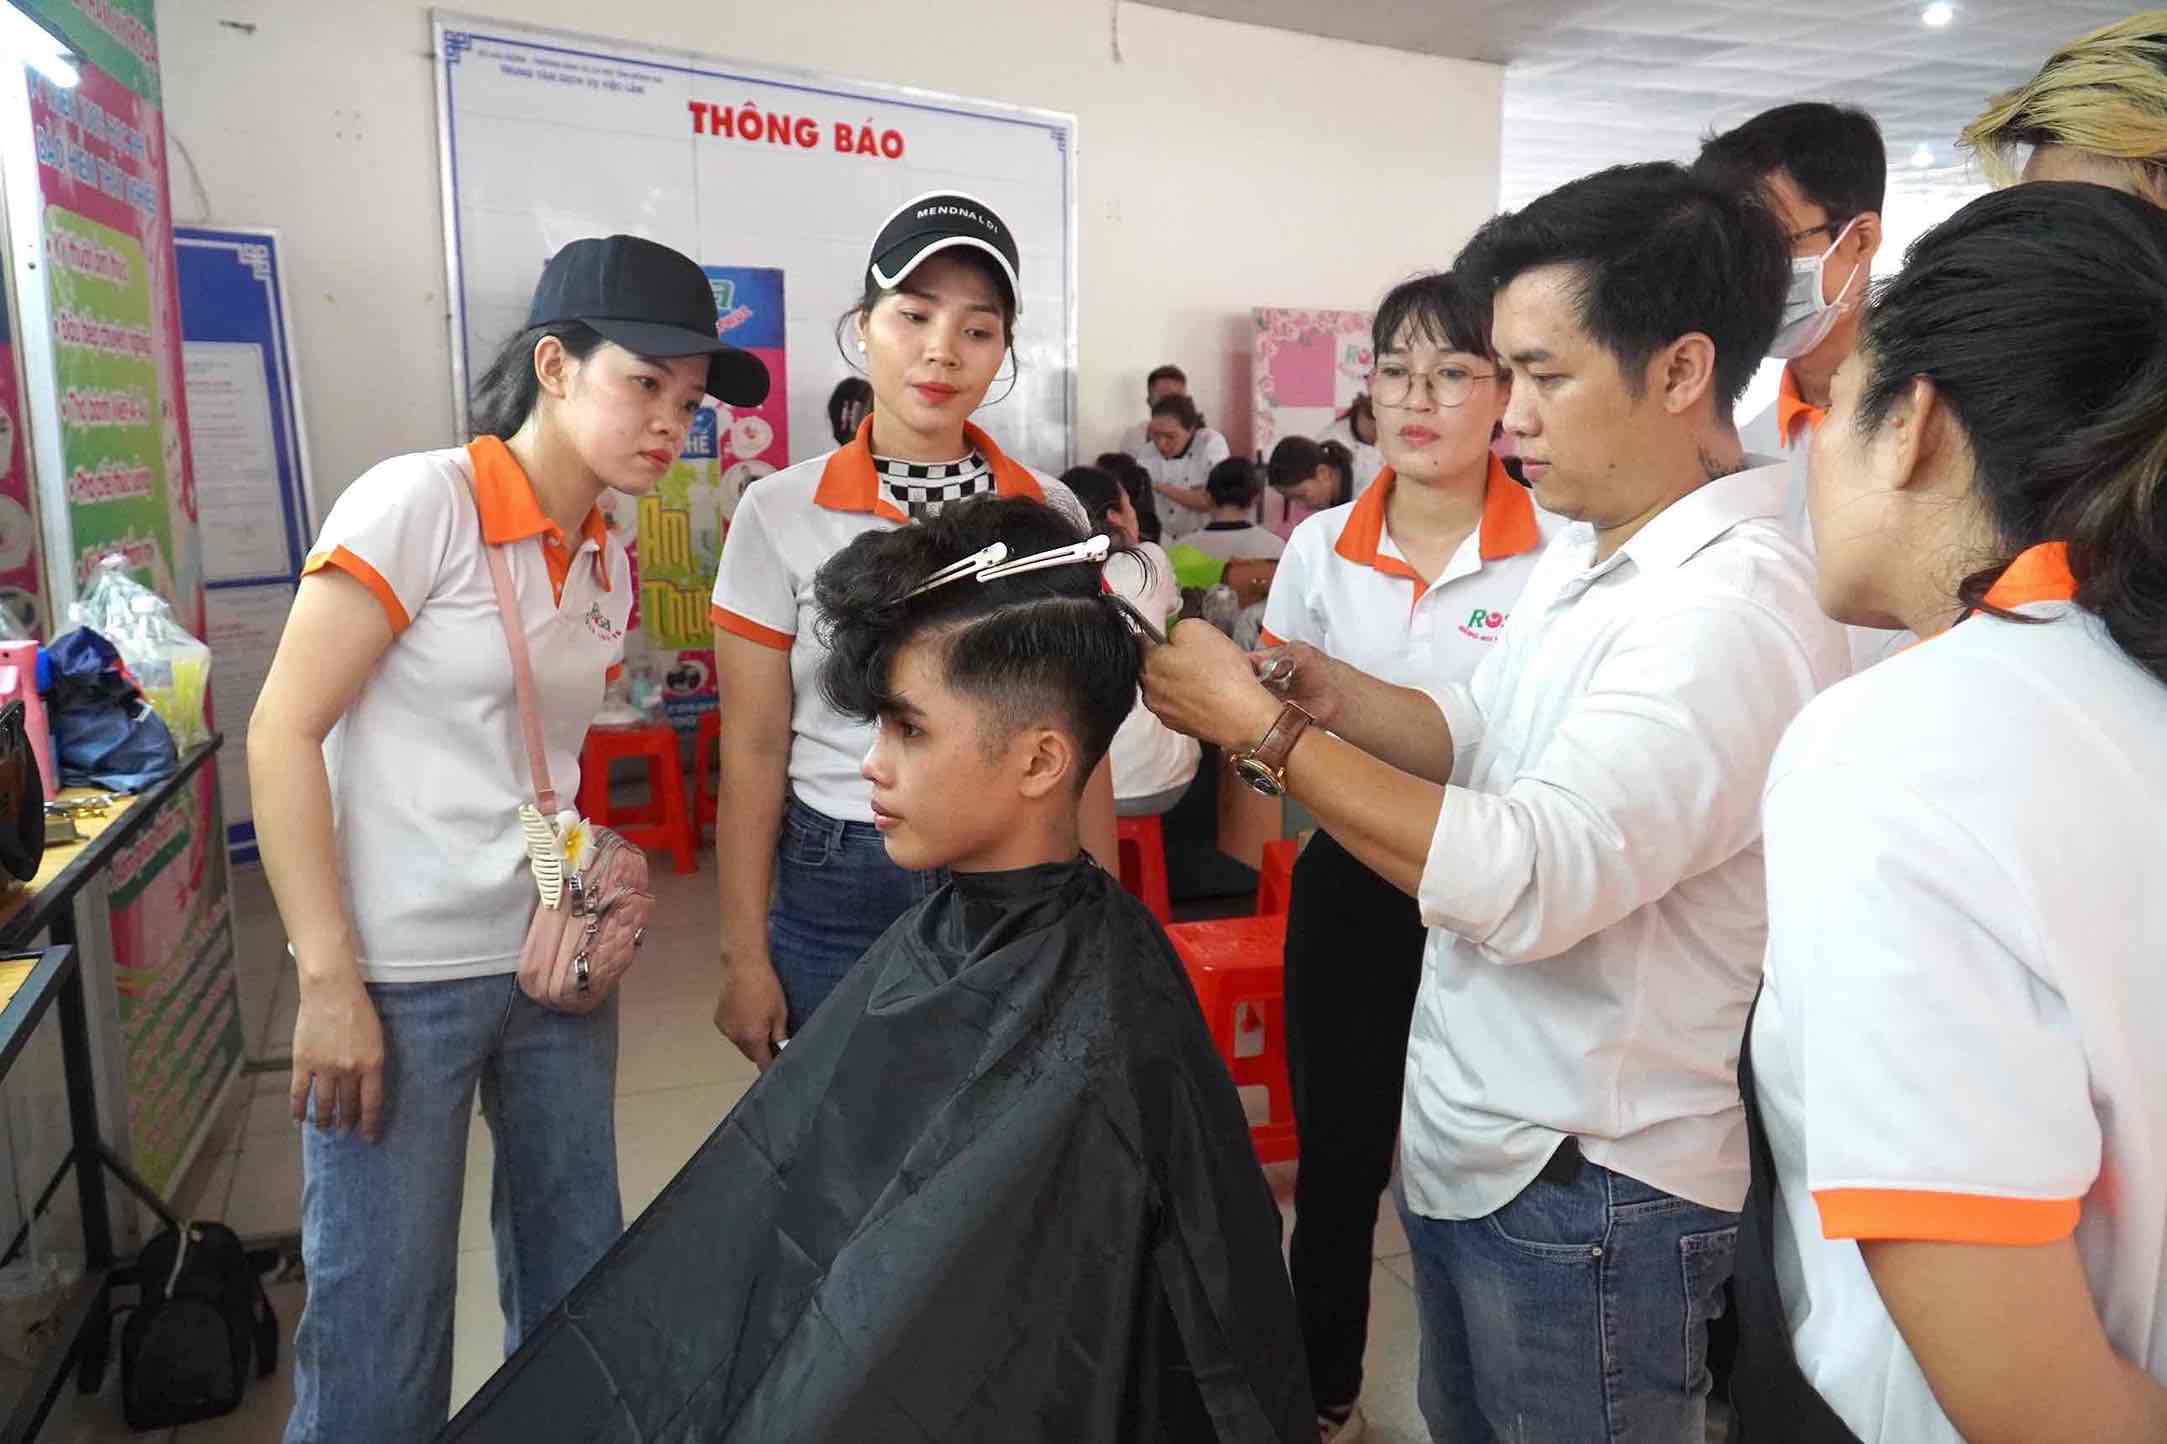 Hoạt động cắt tóc miễn phí tại sàn việc làm Đồng Nai. Ảnh: HAC